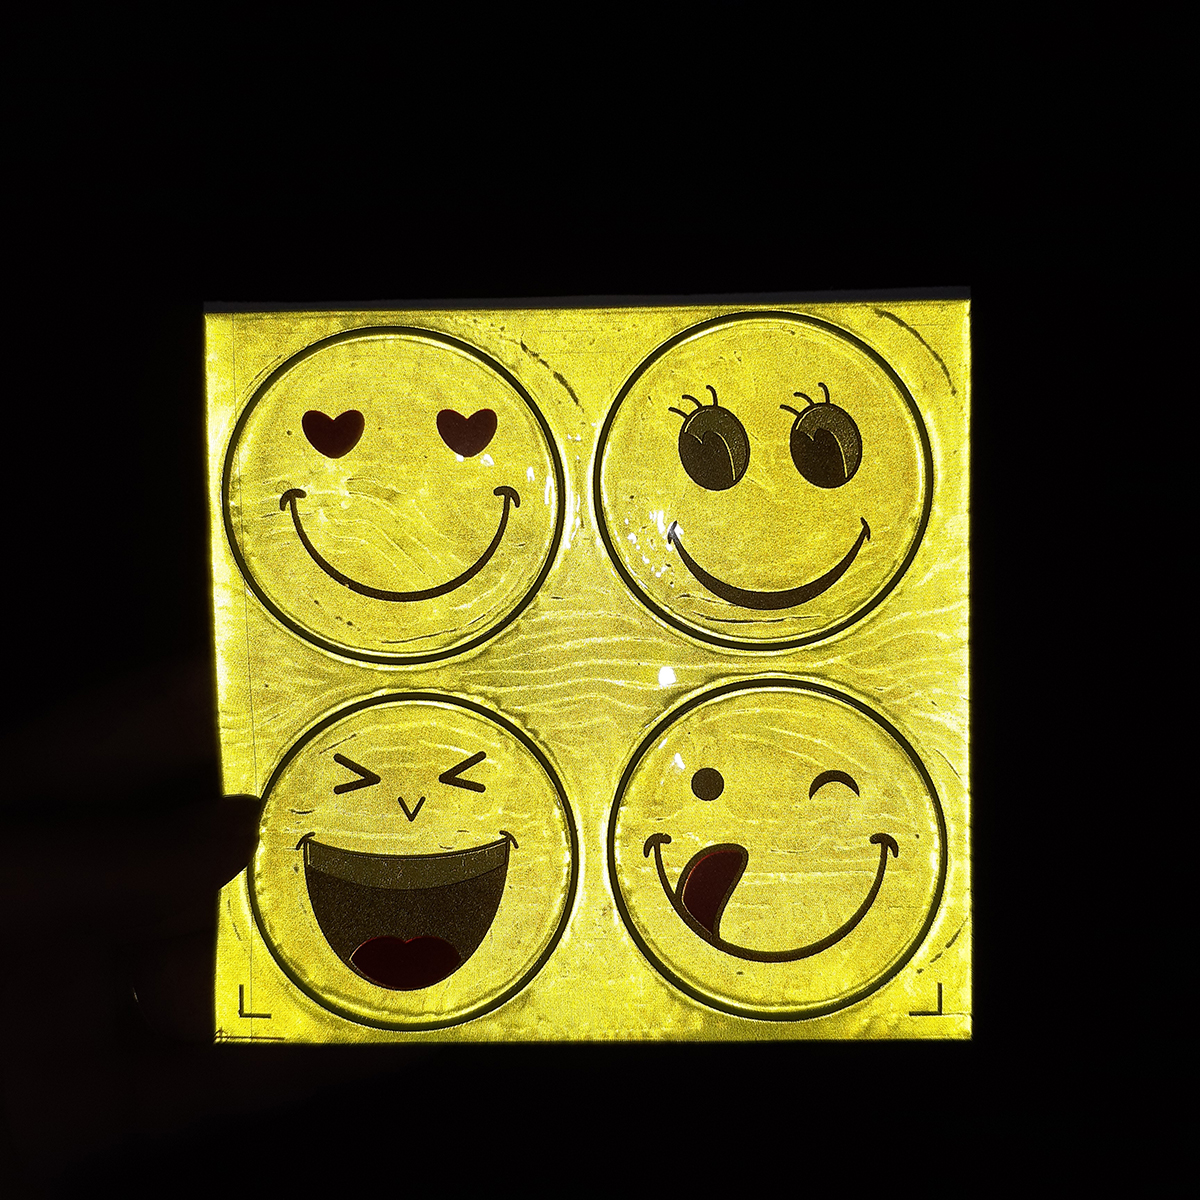 Tấm Sticker dán phản quang 4 hình mặt cười